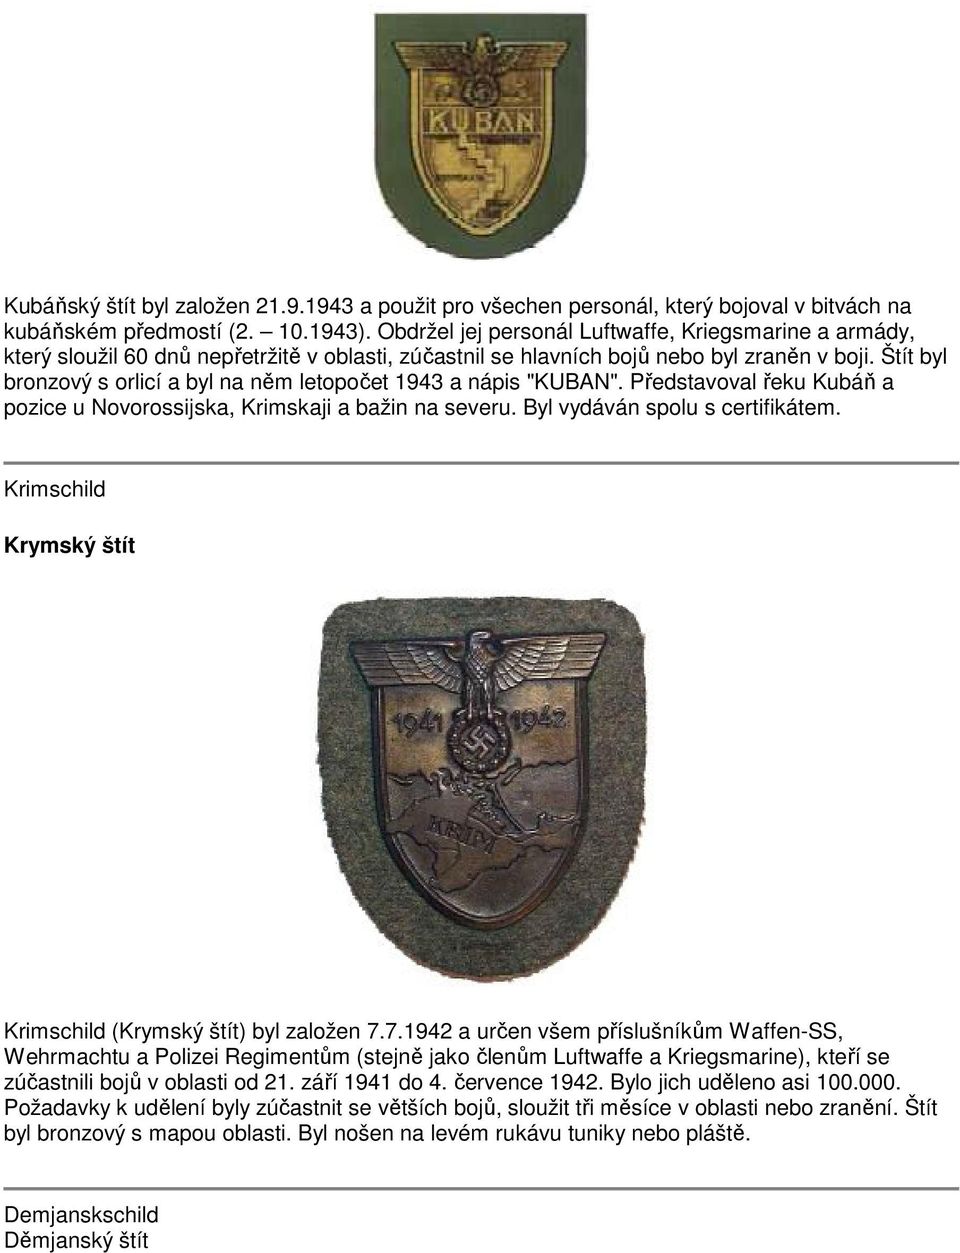 Štít byl bronzový s orlicí a byl na něm letopočet 1943 a nápis "KUBAN". Představoval řeku Kubáň a pozice u Novorossijska, Krimskaji a bažin na severu. Byl vydáván spolu s certifikátem.